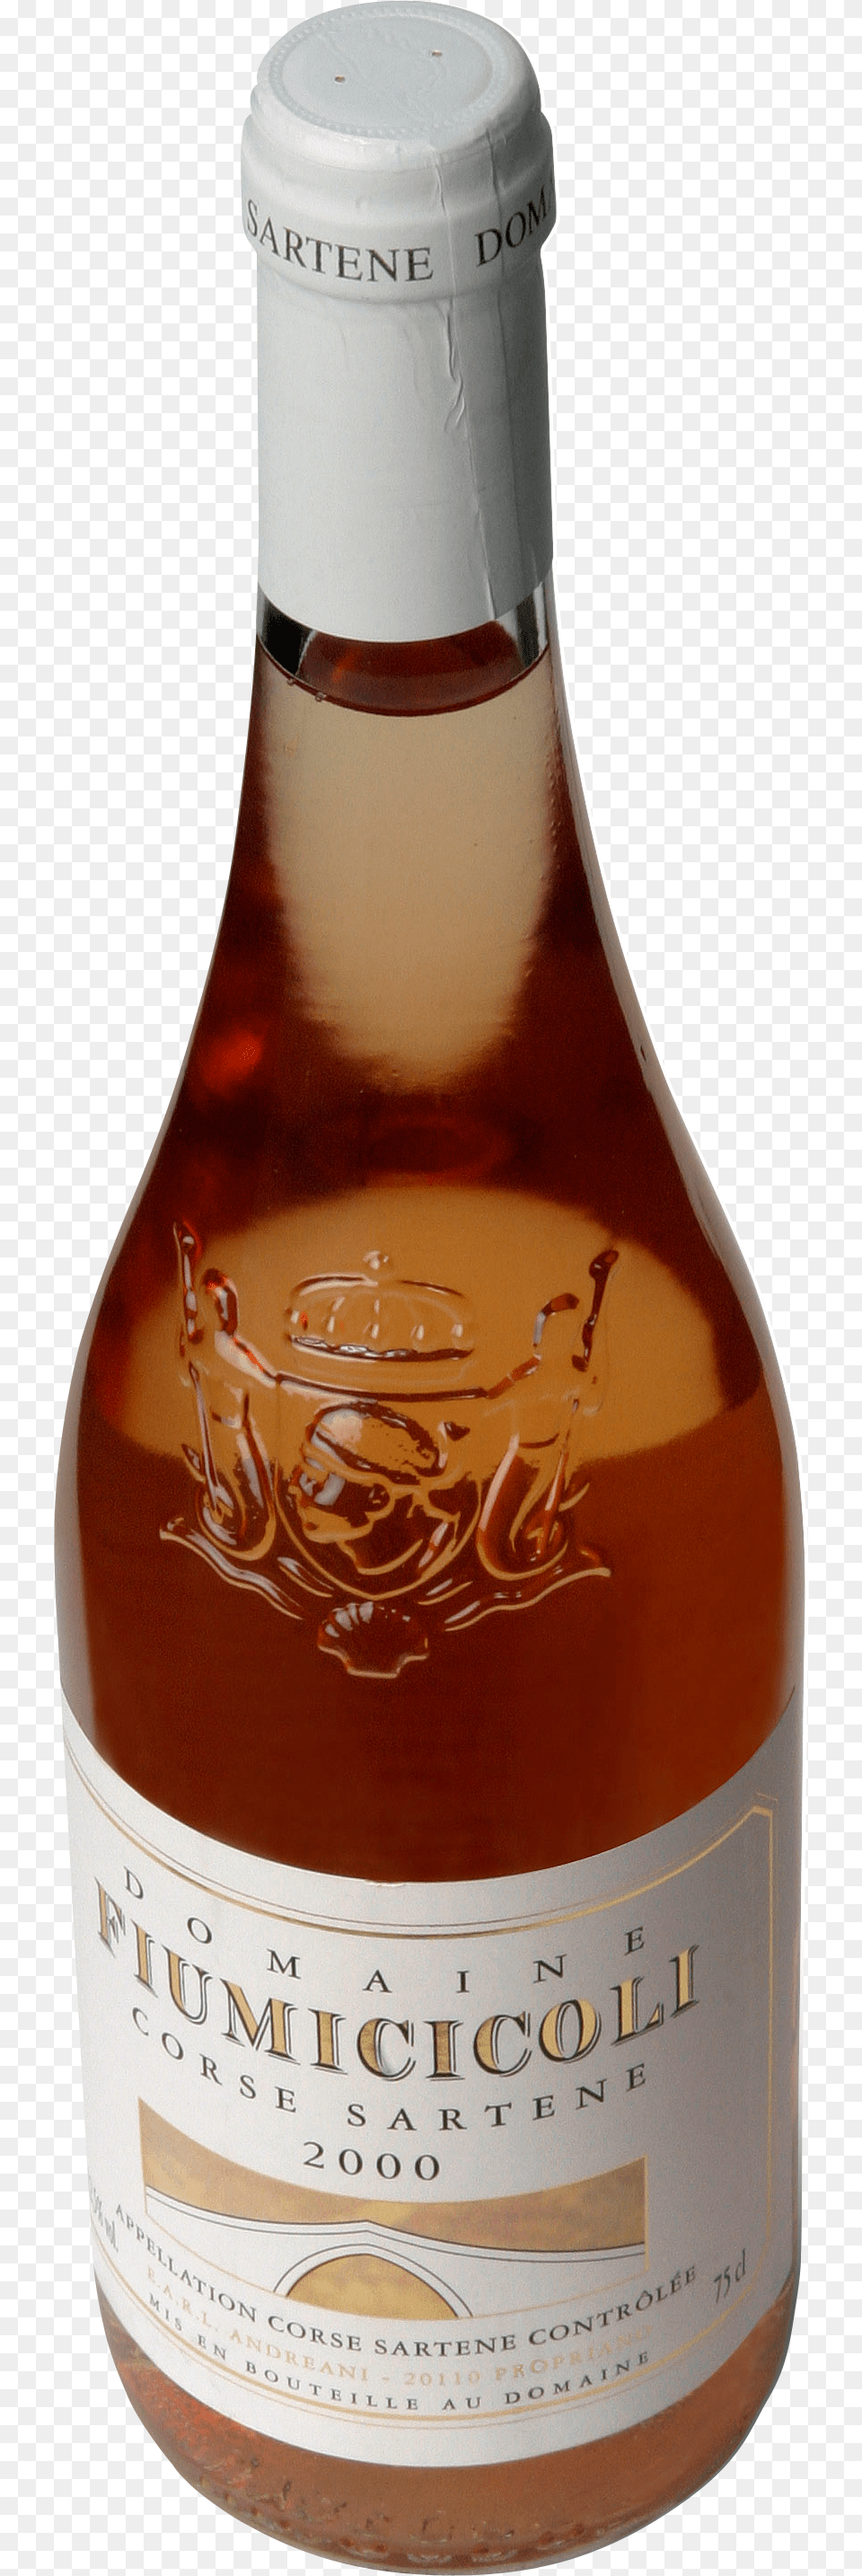 Transparent Beer Bottle Bottle, Alcohol, Beverage, Beer Bottle, Liquor Free Png Download